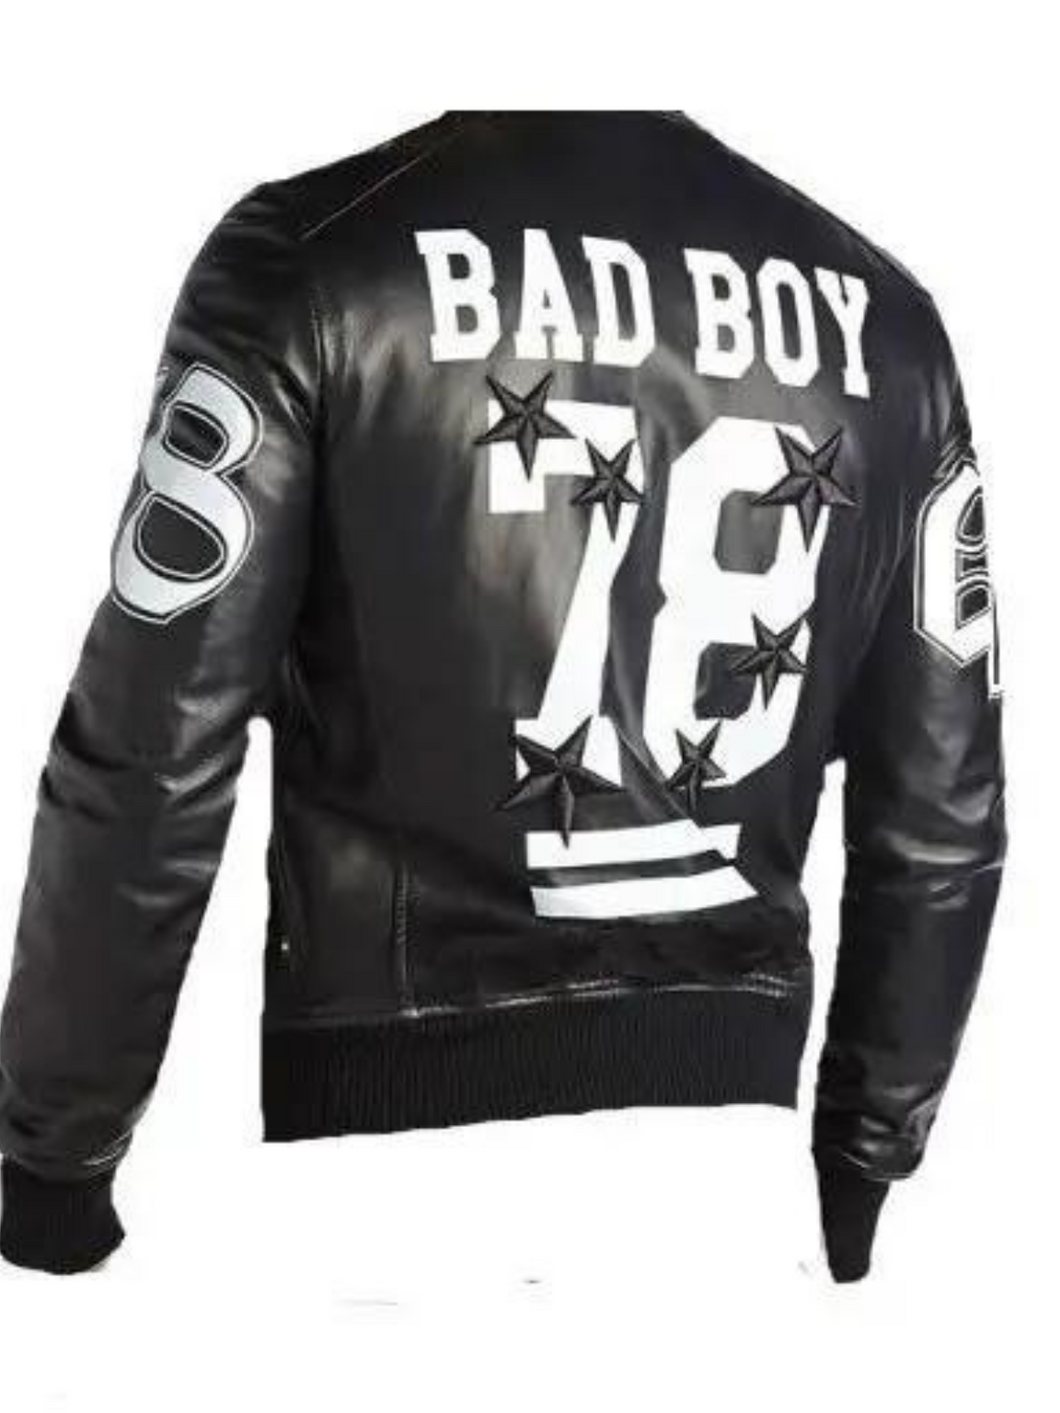 Mens Black Bomber Stylish Bad Boy Leather Jacket